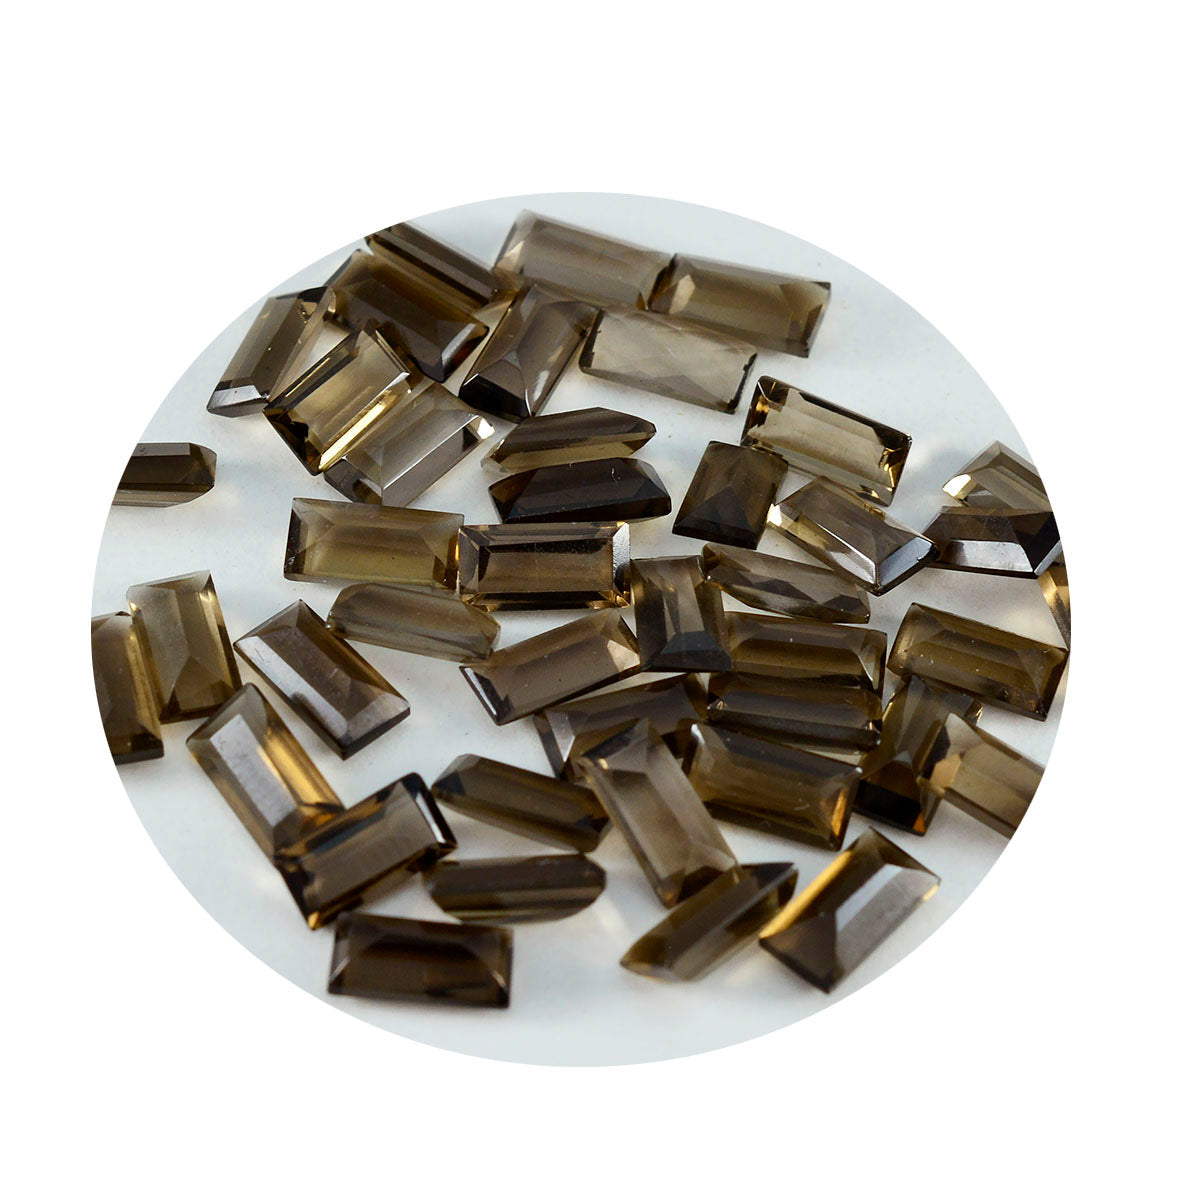 riyogems 1 шт. настоящий коричневый дымчатый кварц ограненный 2x4 мм в форме багета милые качественные свободные драгоценные камни